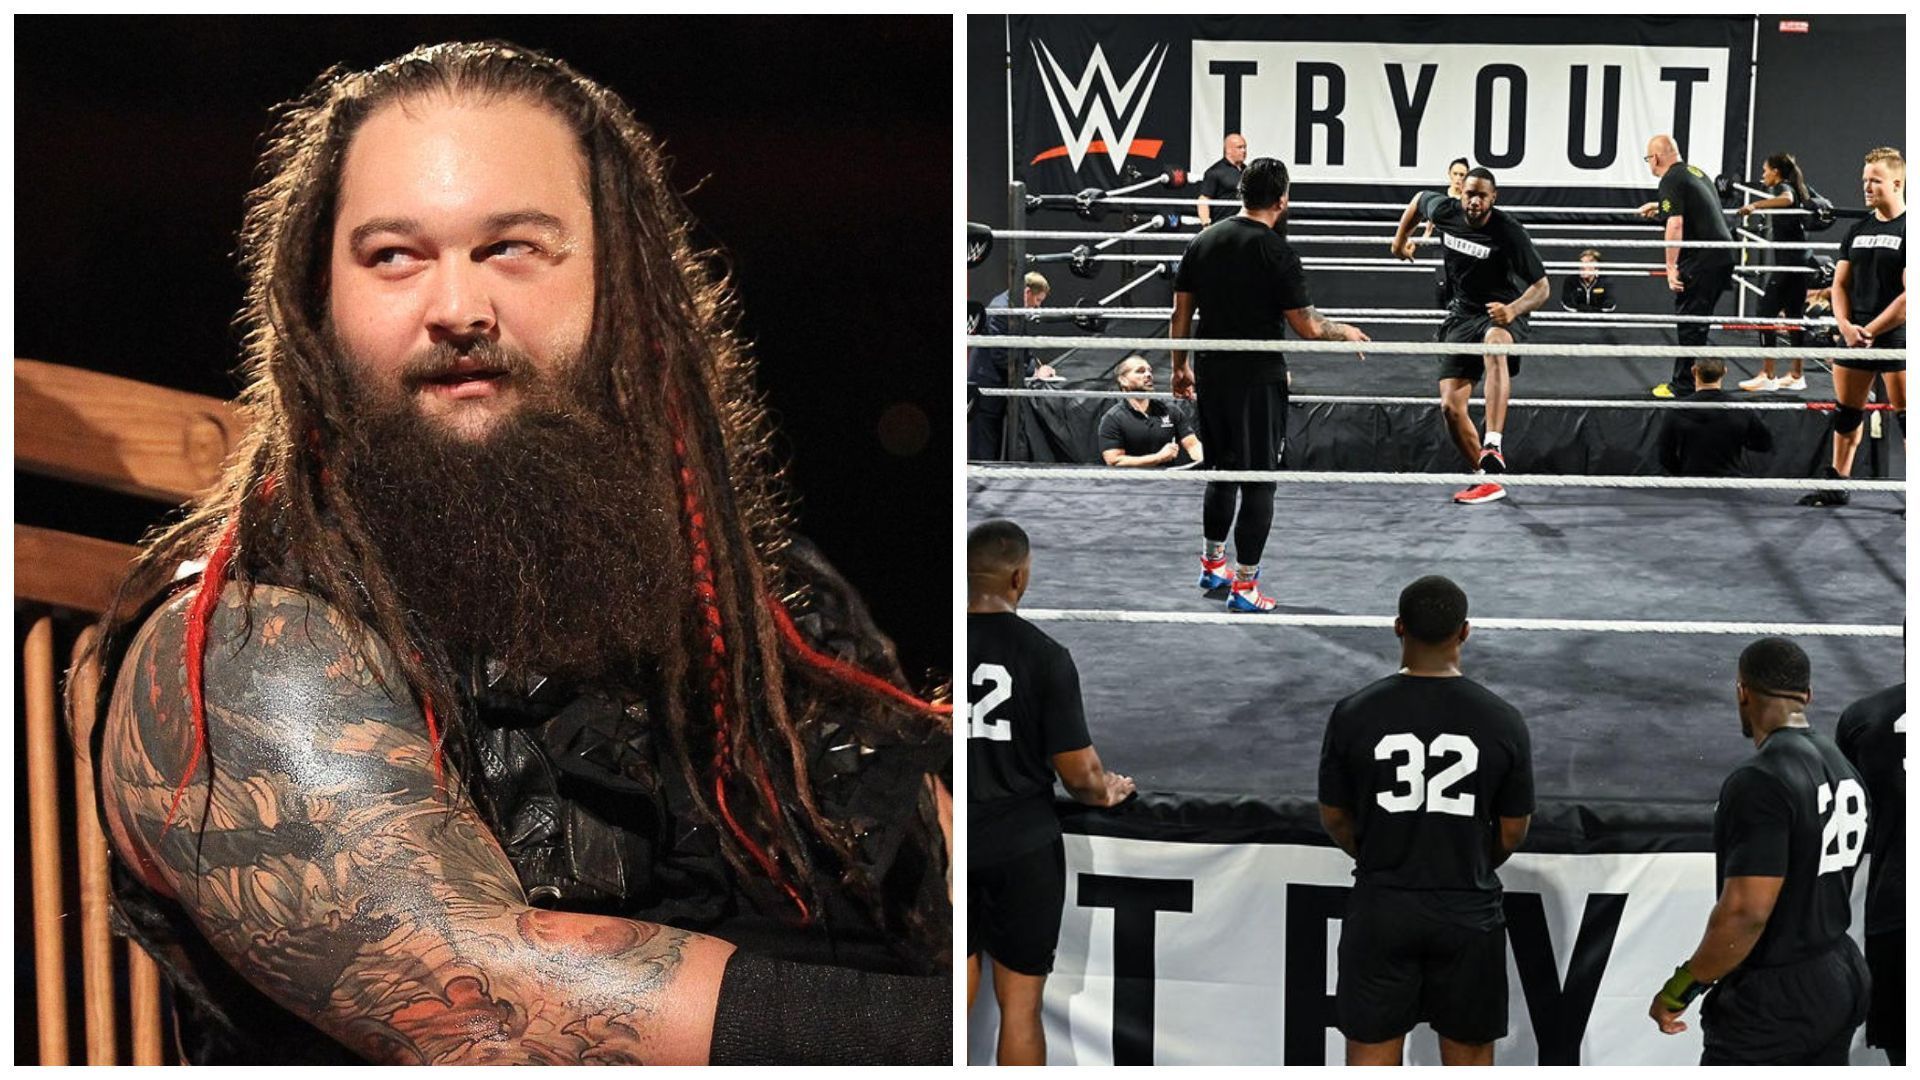 WWE Superstar Bray Wyatt passed away at 36.